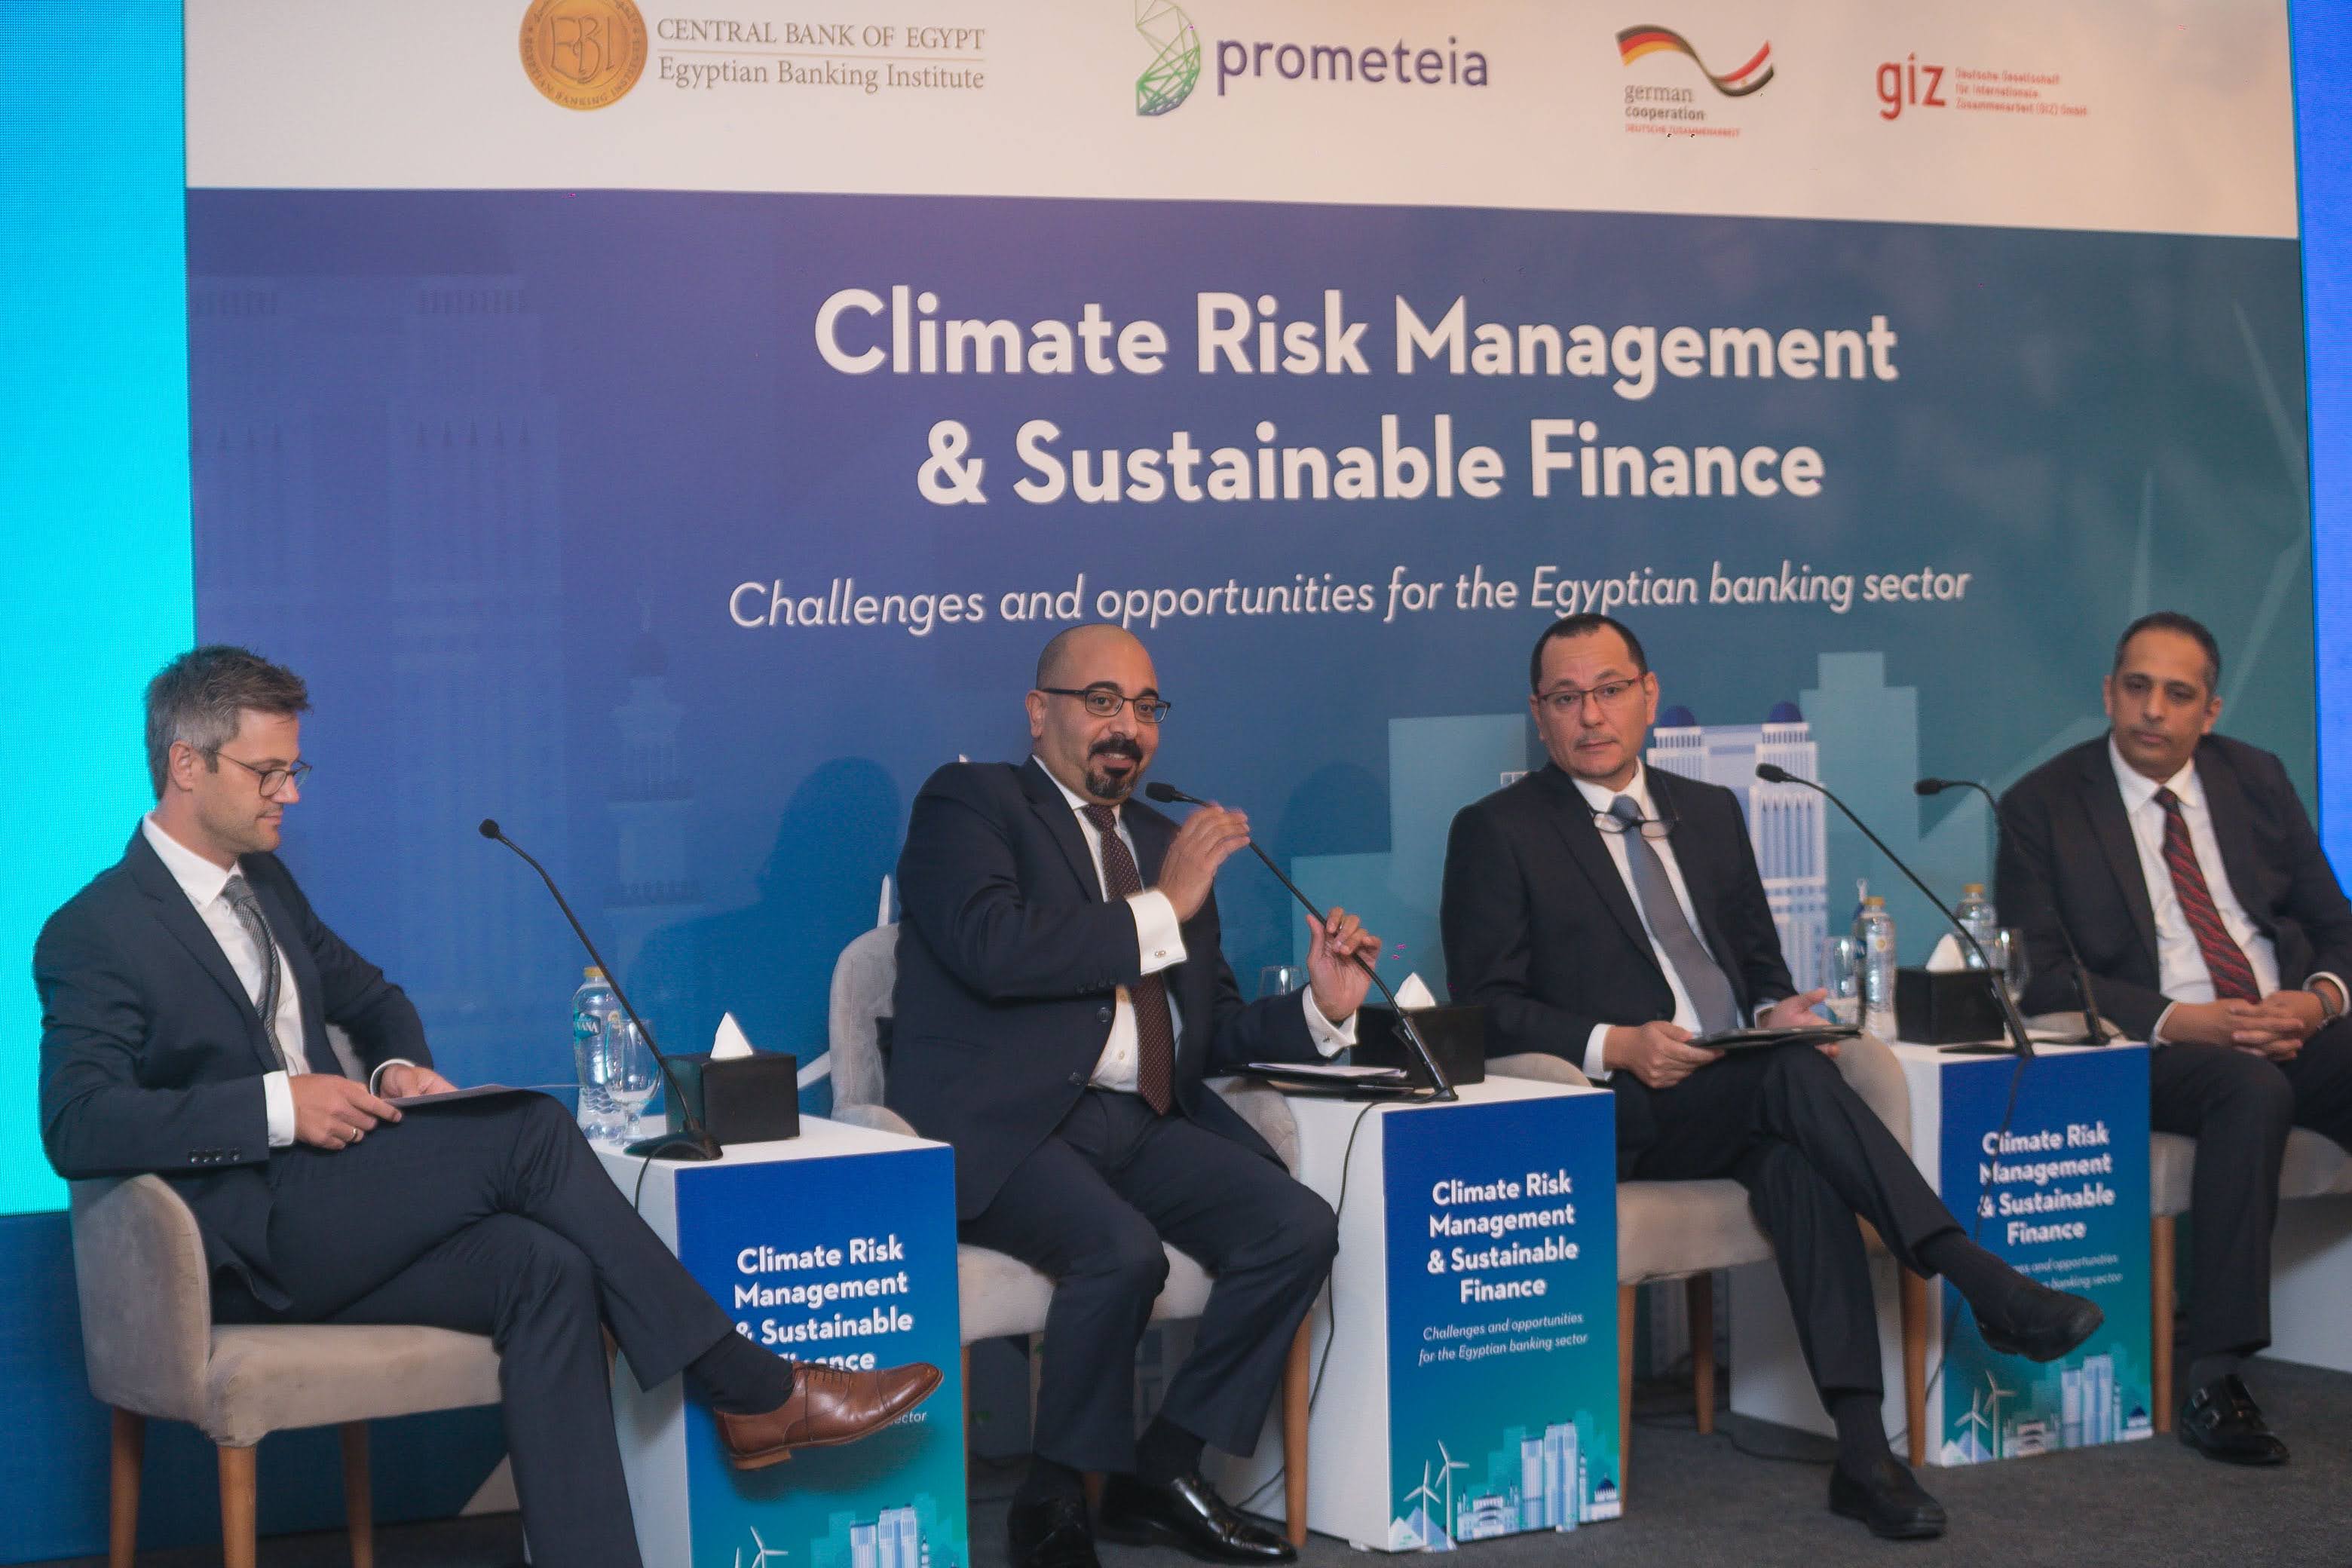 Vier Männer im Anzug sitzen auf einer Bühne und diskutieren das Thema Klimarisikomanagement und nachhaltige Finanzen.